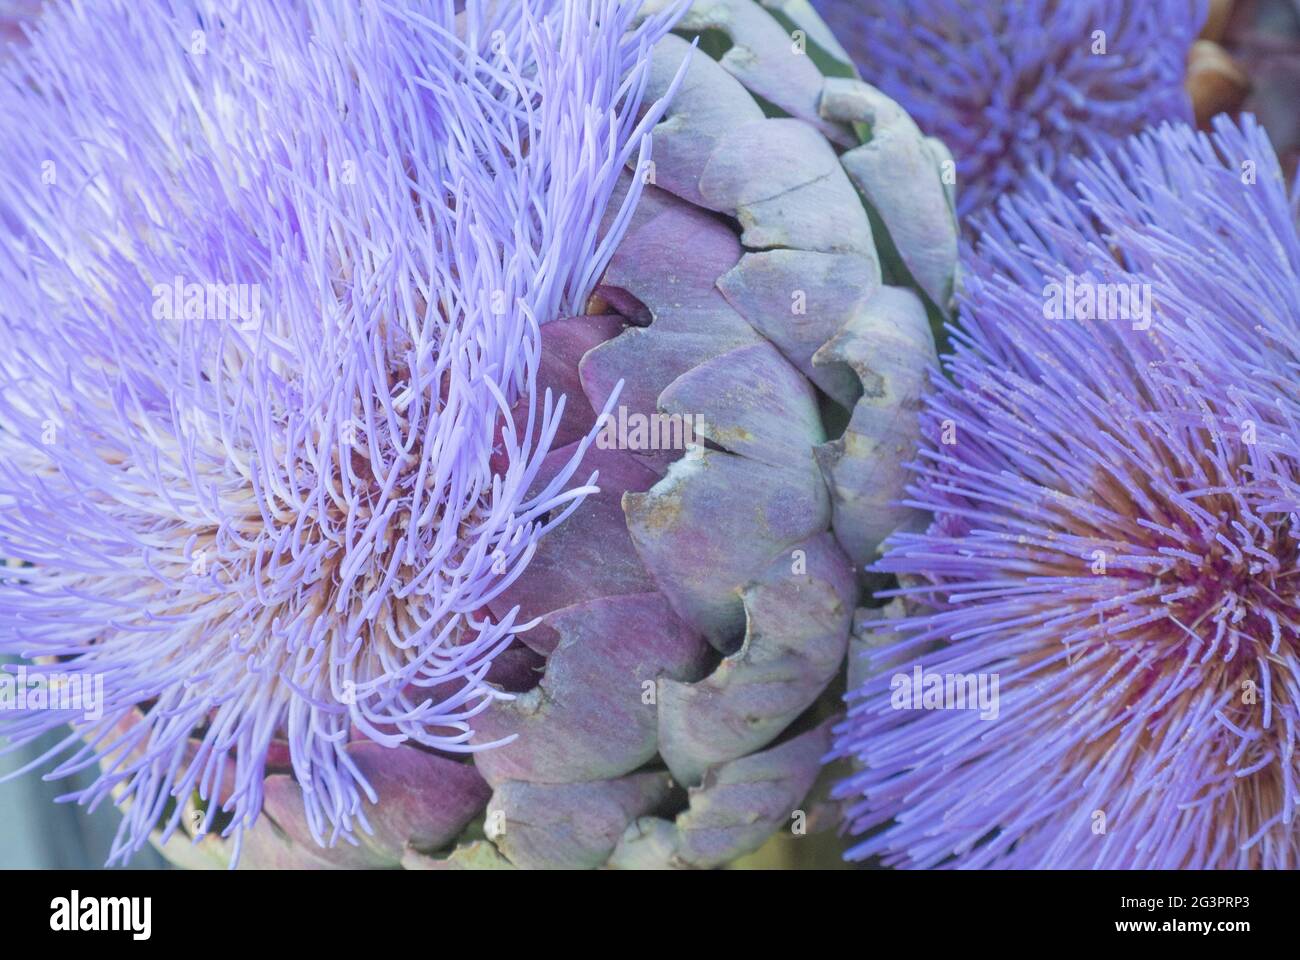 Artichoke Head with Flower in Bloom Stock Photo